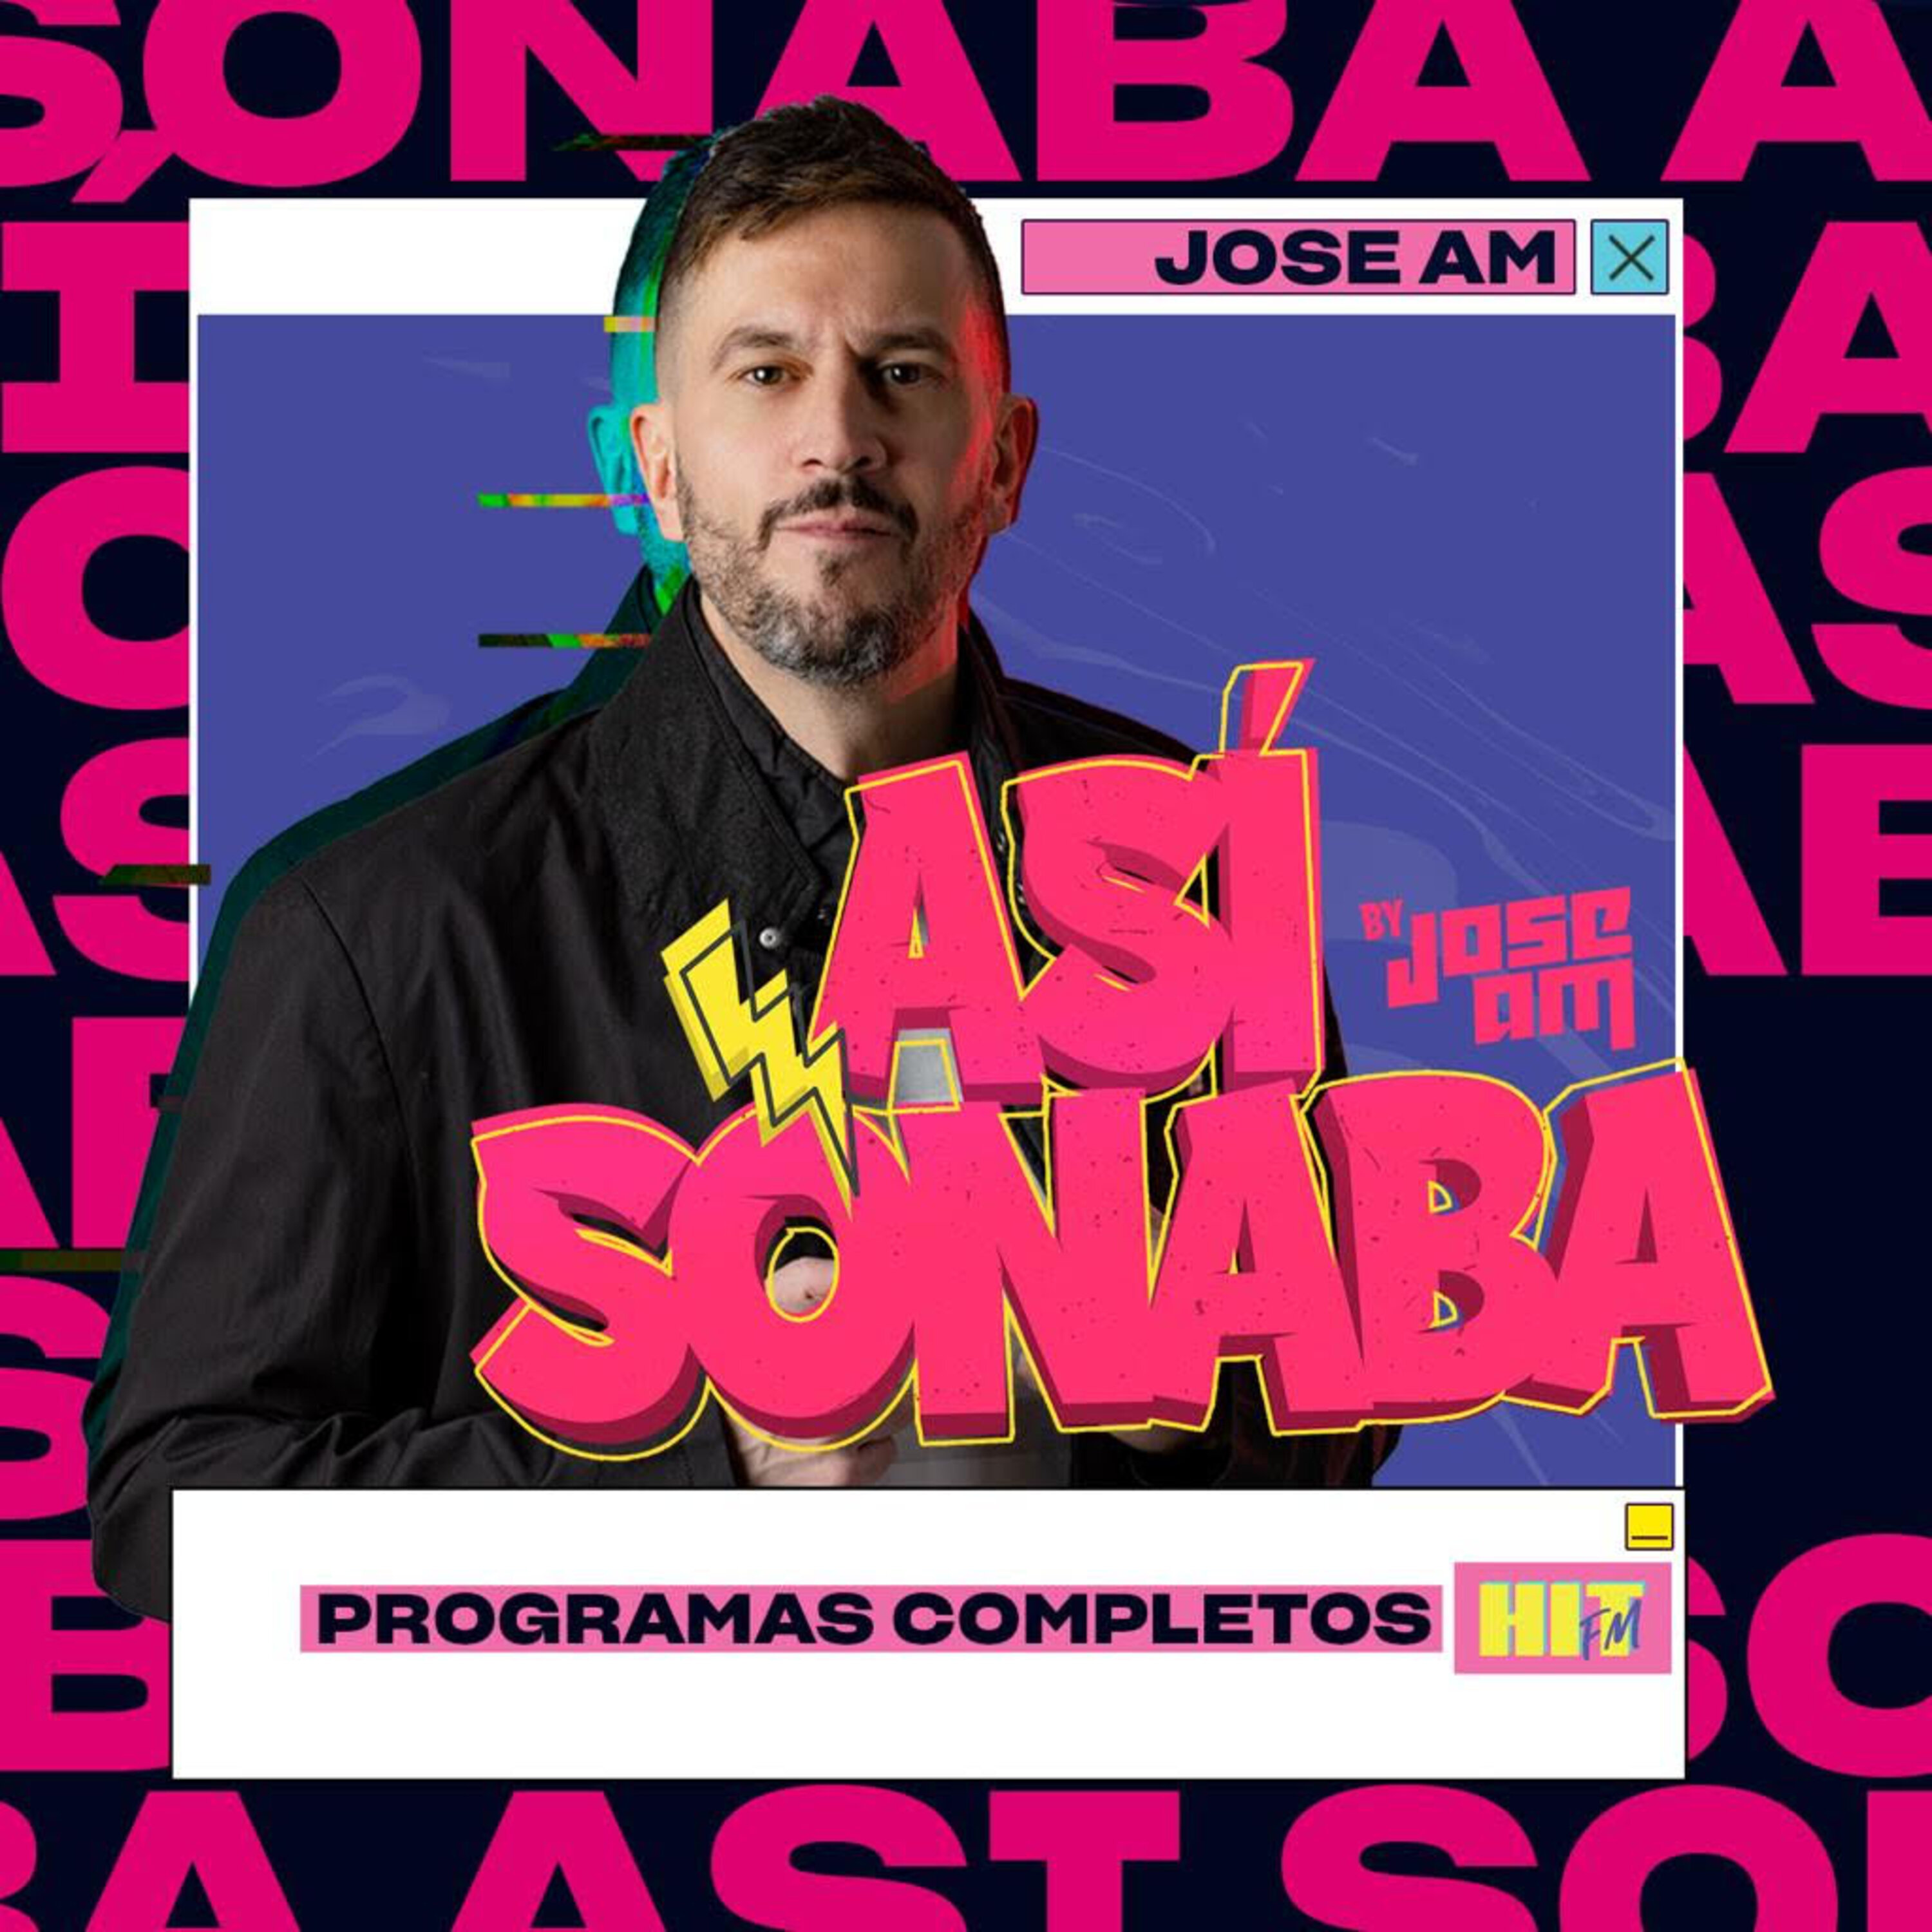 Así Sonaba by Jose AM EP 039 - HIMNOS DE TOMORROWLAND PT 1